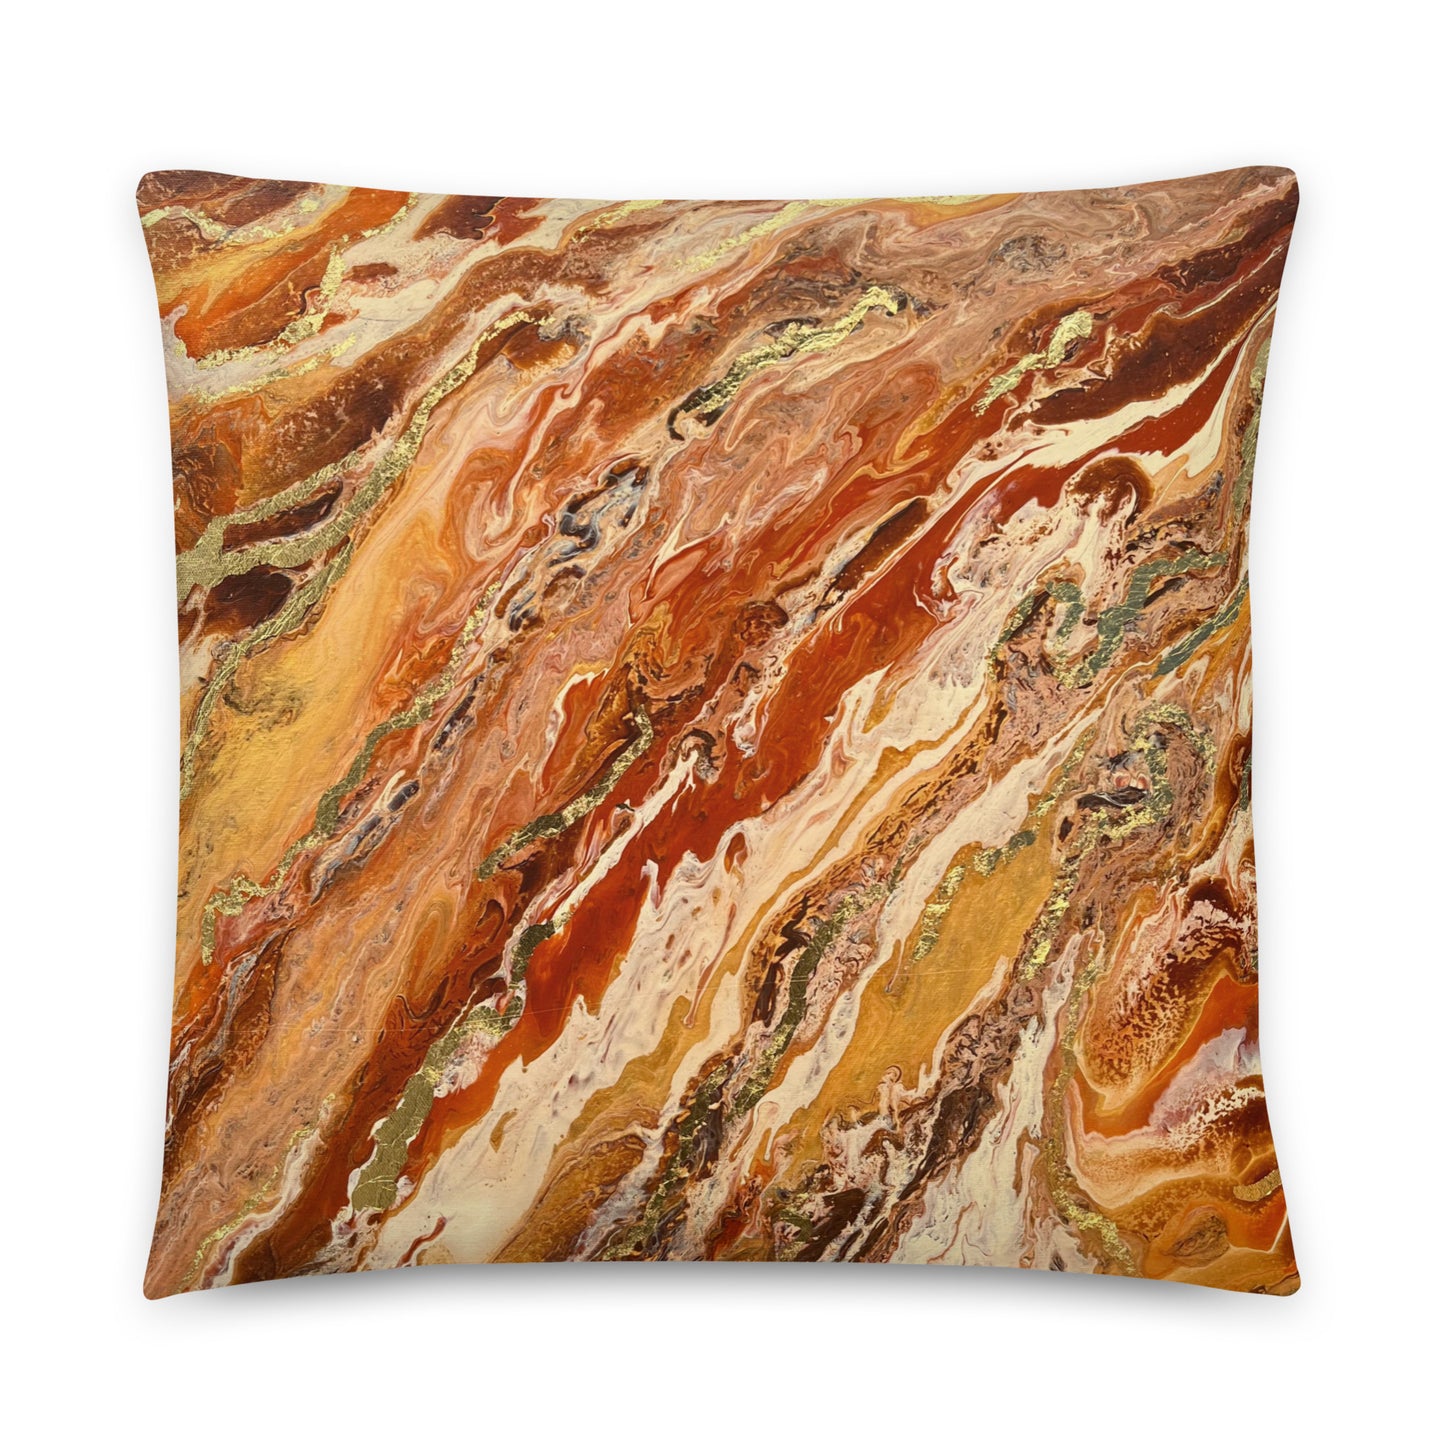 Brown & Gold Decorative Throw Pillow